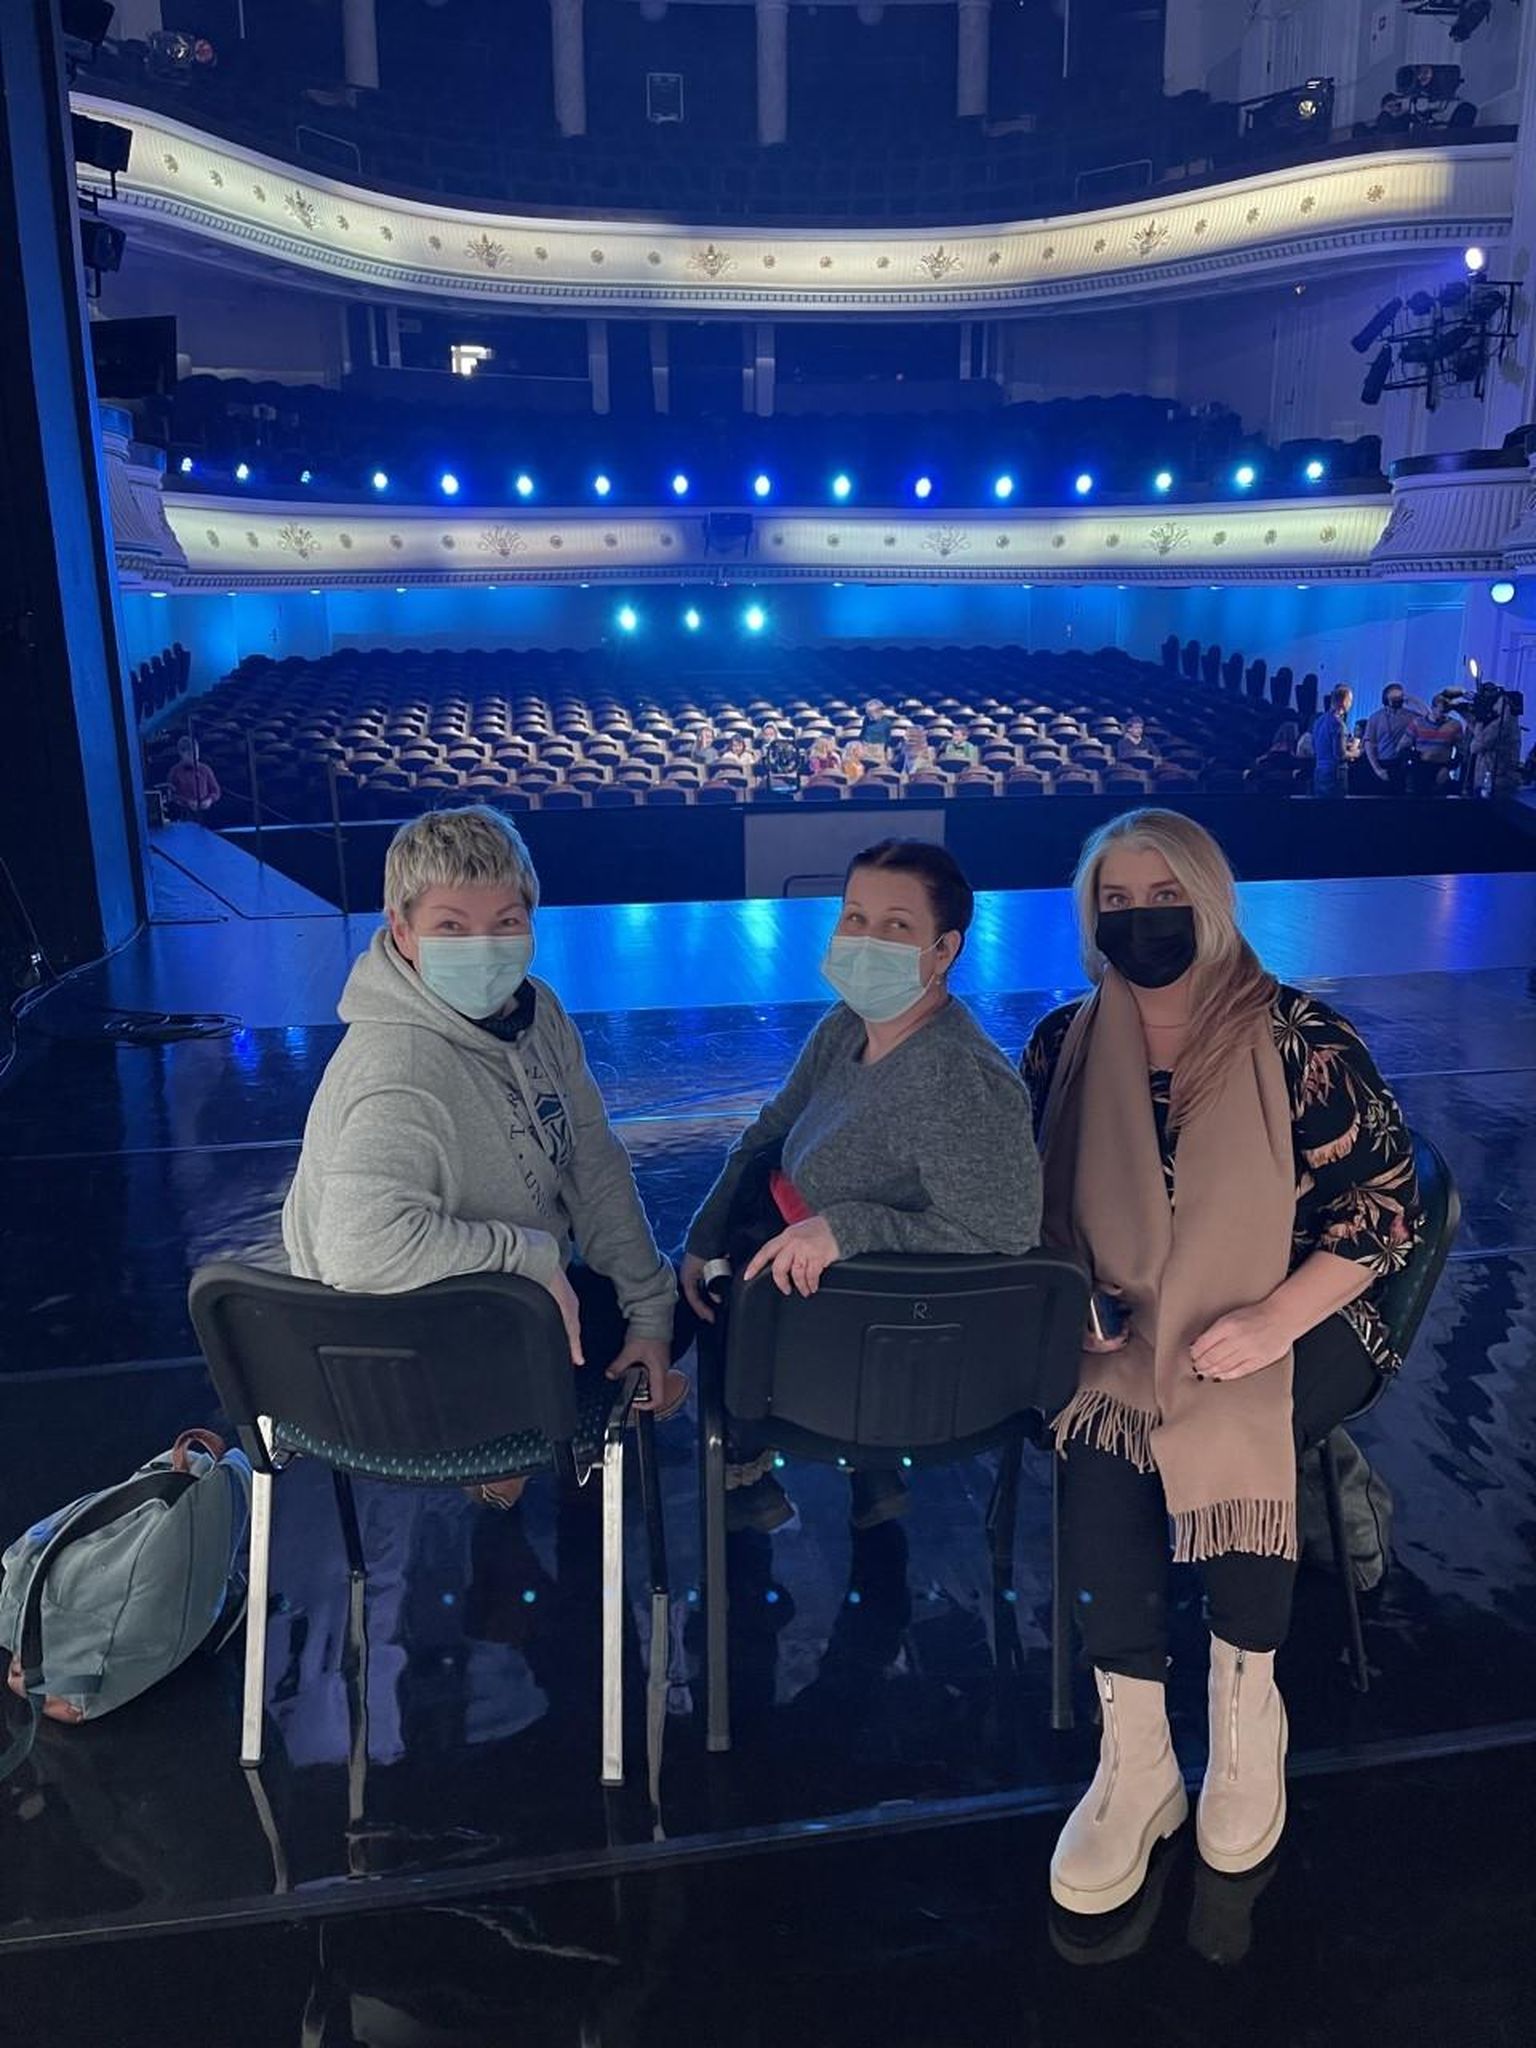 Vabariigi aastapäeva ligipääsetavuse naiskond teisipäeval Estonia teatrisaalis (vasakult): projektijuht Piret Aus, konsultant Kai Kunder ja kirjeldustõlk Krista Fatkin.